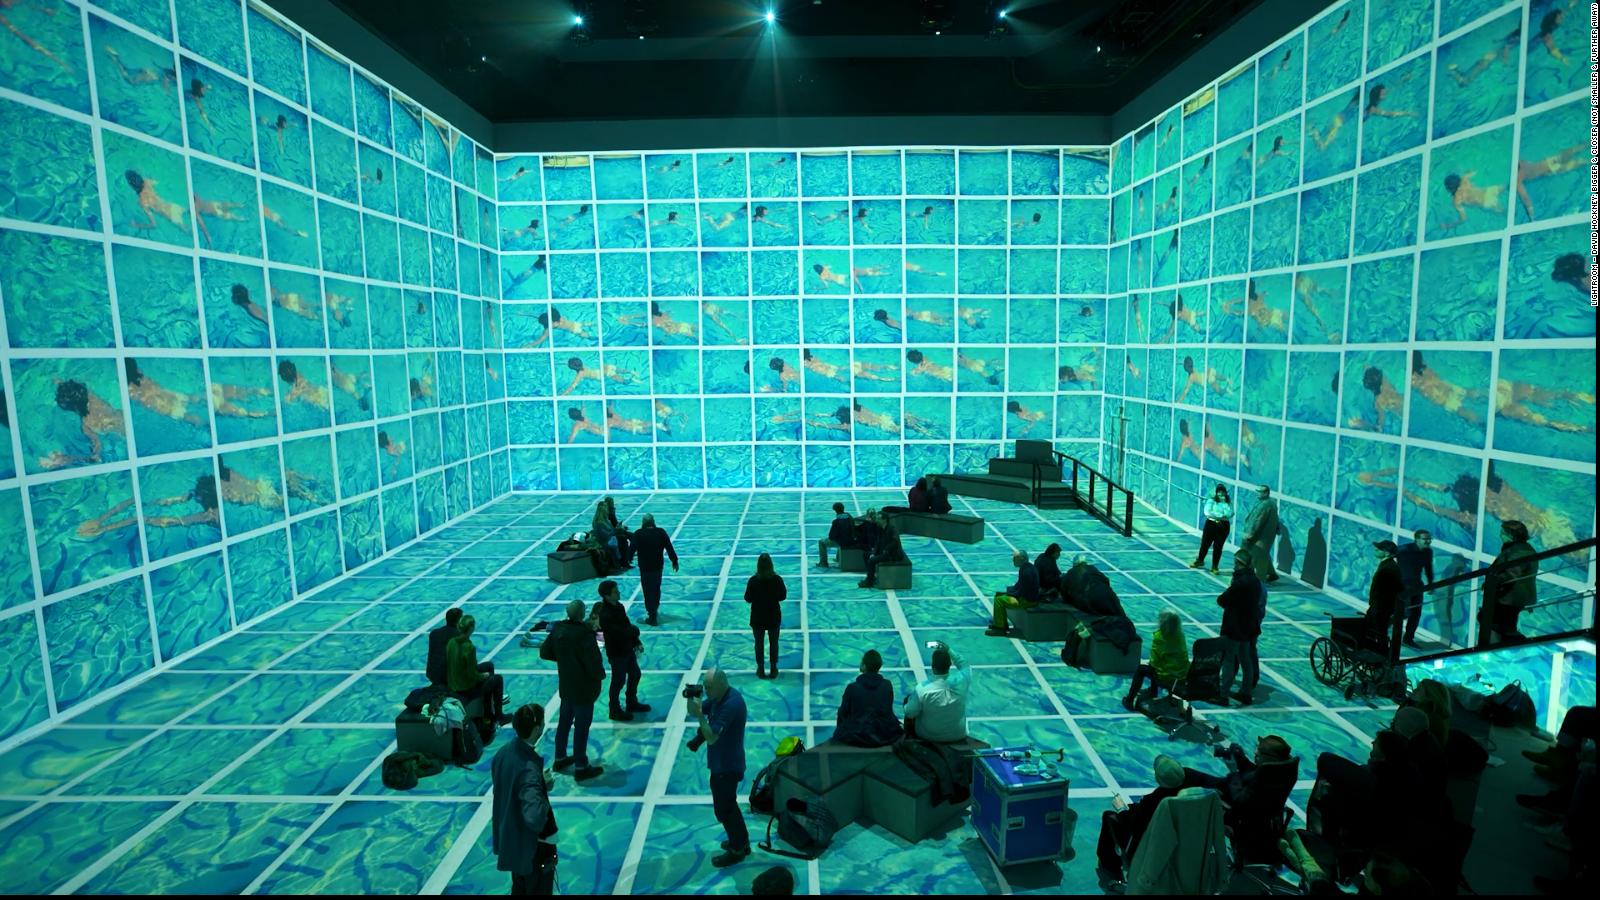 Video David Hockney exhibition at Lightroom lets visitors step inside